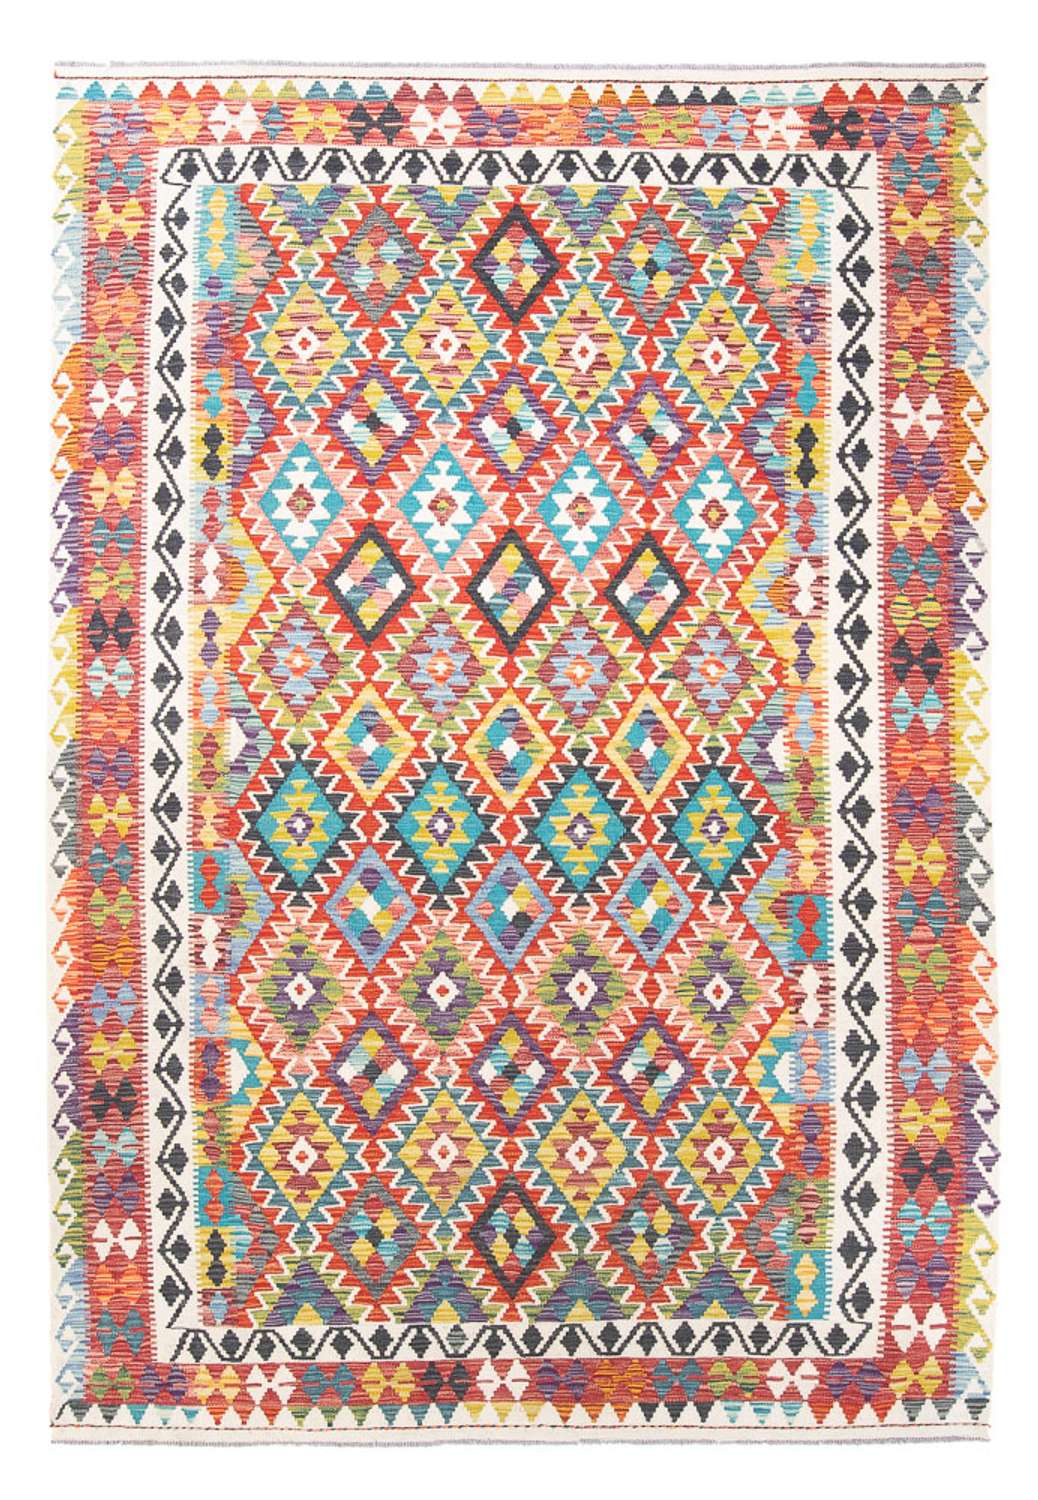 Tapete Kelim - Splash - 287 x 202 cm - multicolorido